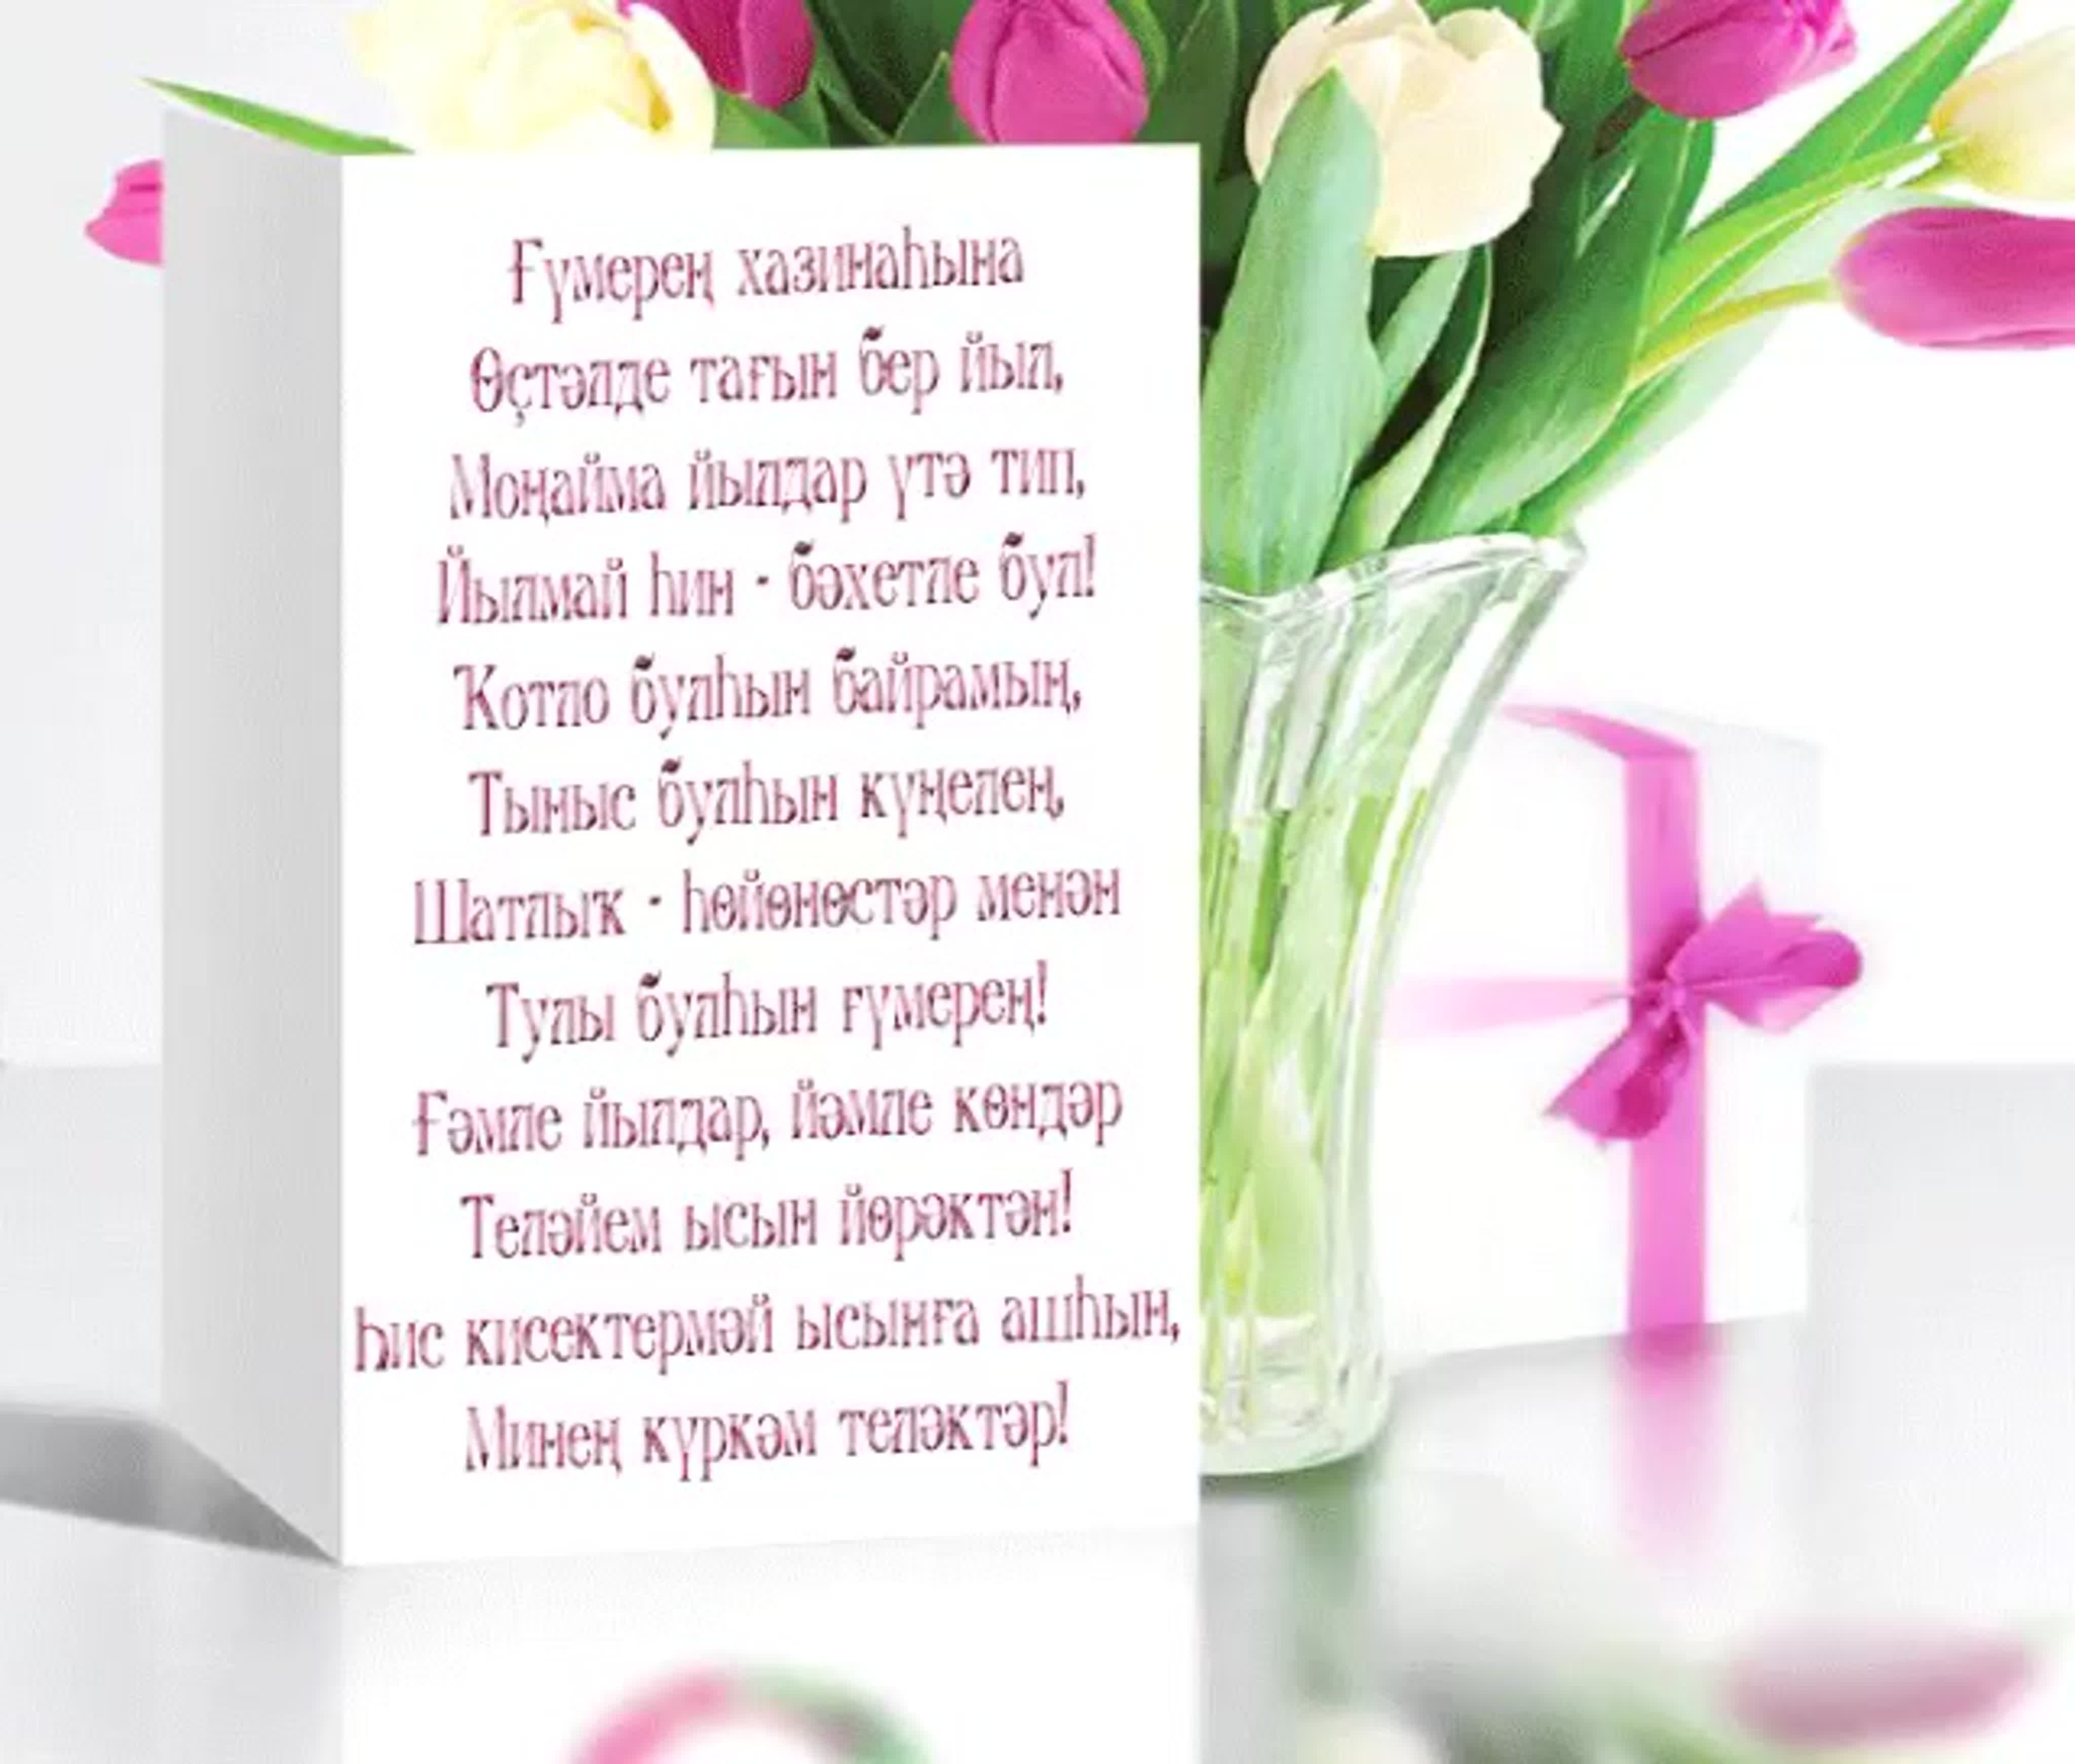 Поздравление сестры на башкирском языке. Поздравления с днём рождения на башкирском. Поздравление с юбилеем на башкирском языке. Поздравления с днём рождения на башкирском языке. Поздравления с днём на башкирском языке.